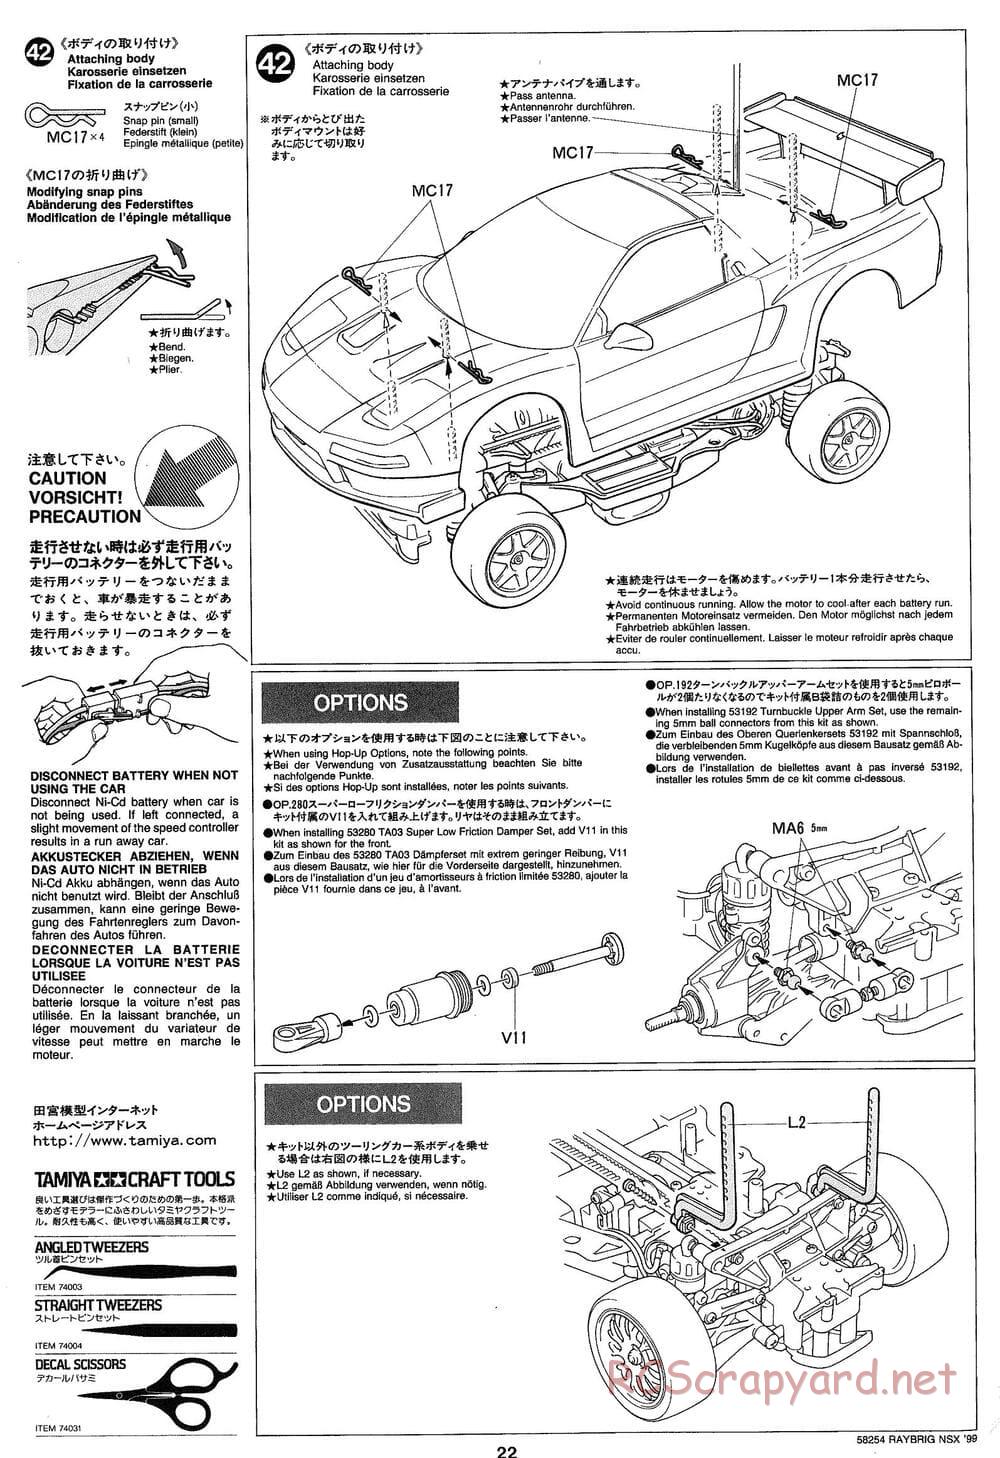 Tamiya - Raybrig NSX 99 - TA-03R Chassis - Manual - Page 22